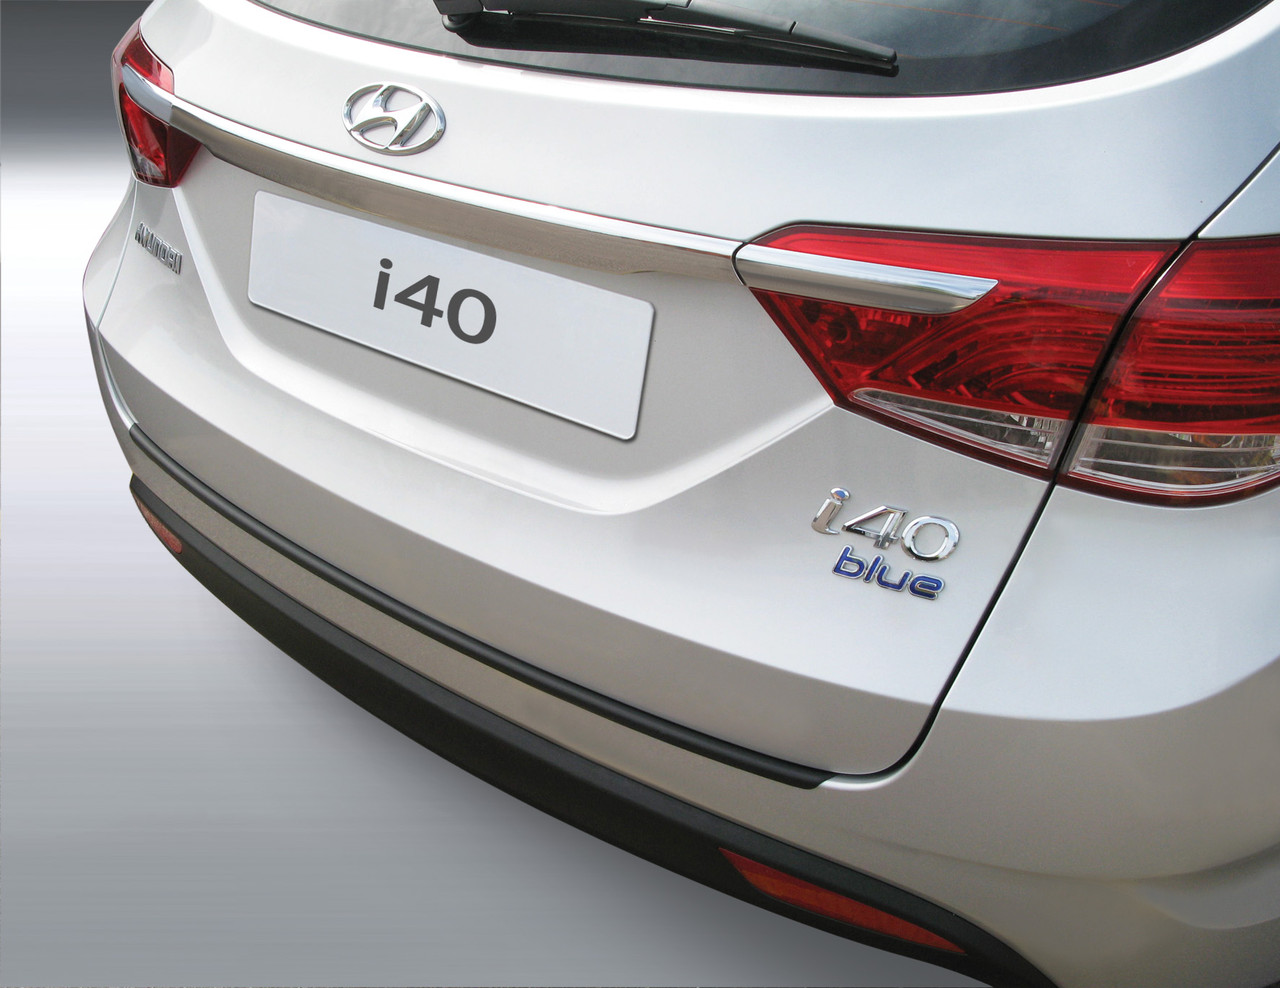 Ladekantenschutz für Hyundai i40 - Schutz für die Ladekante Ihres